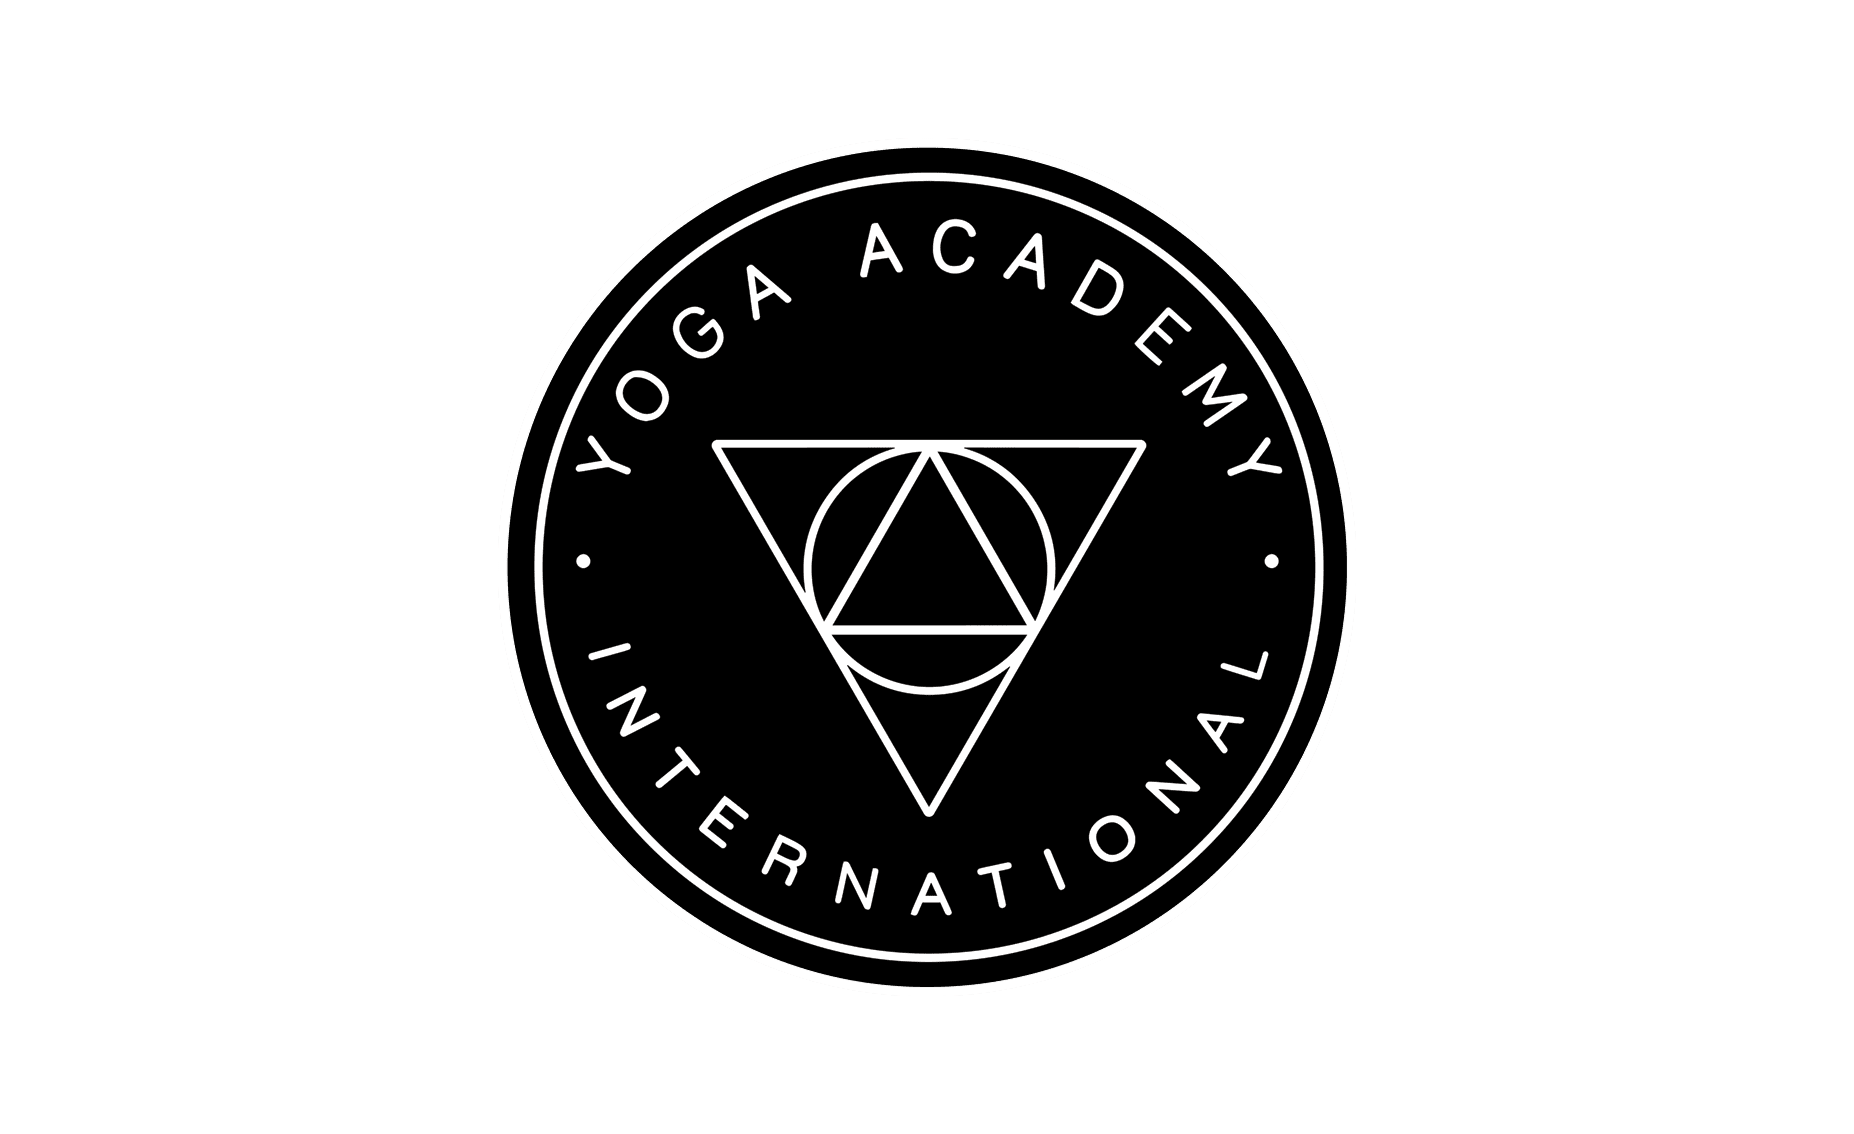 Yoga Education From A Heartfelt Place - Yoga Academy